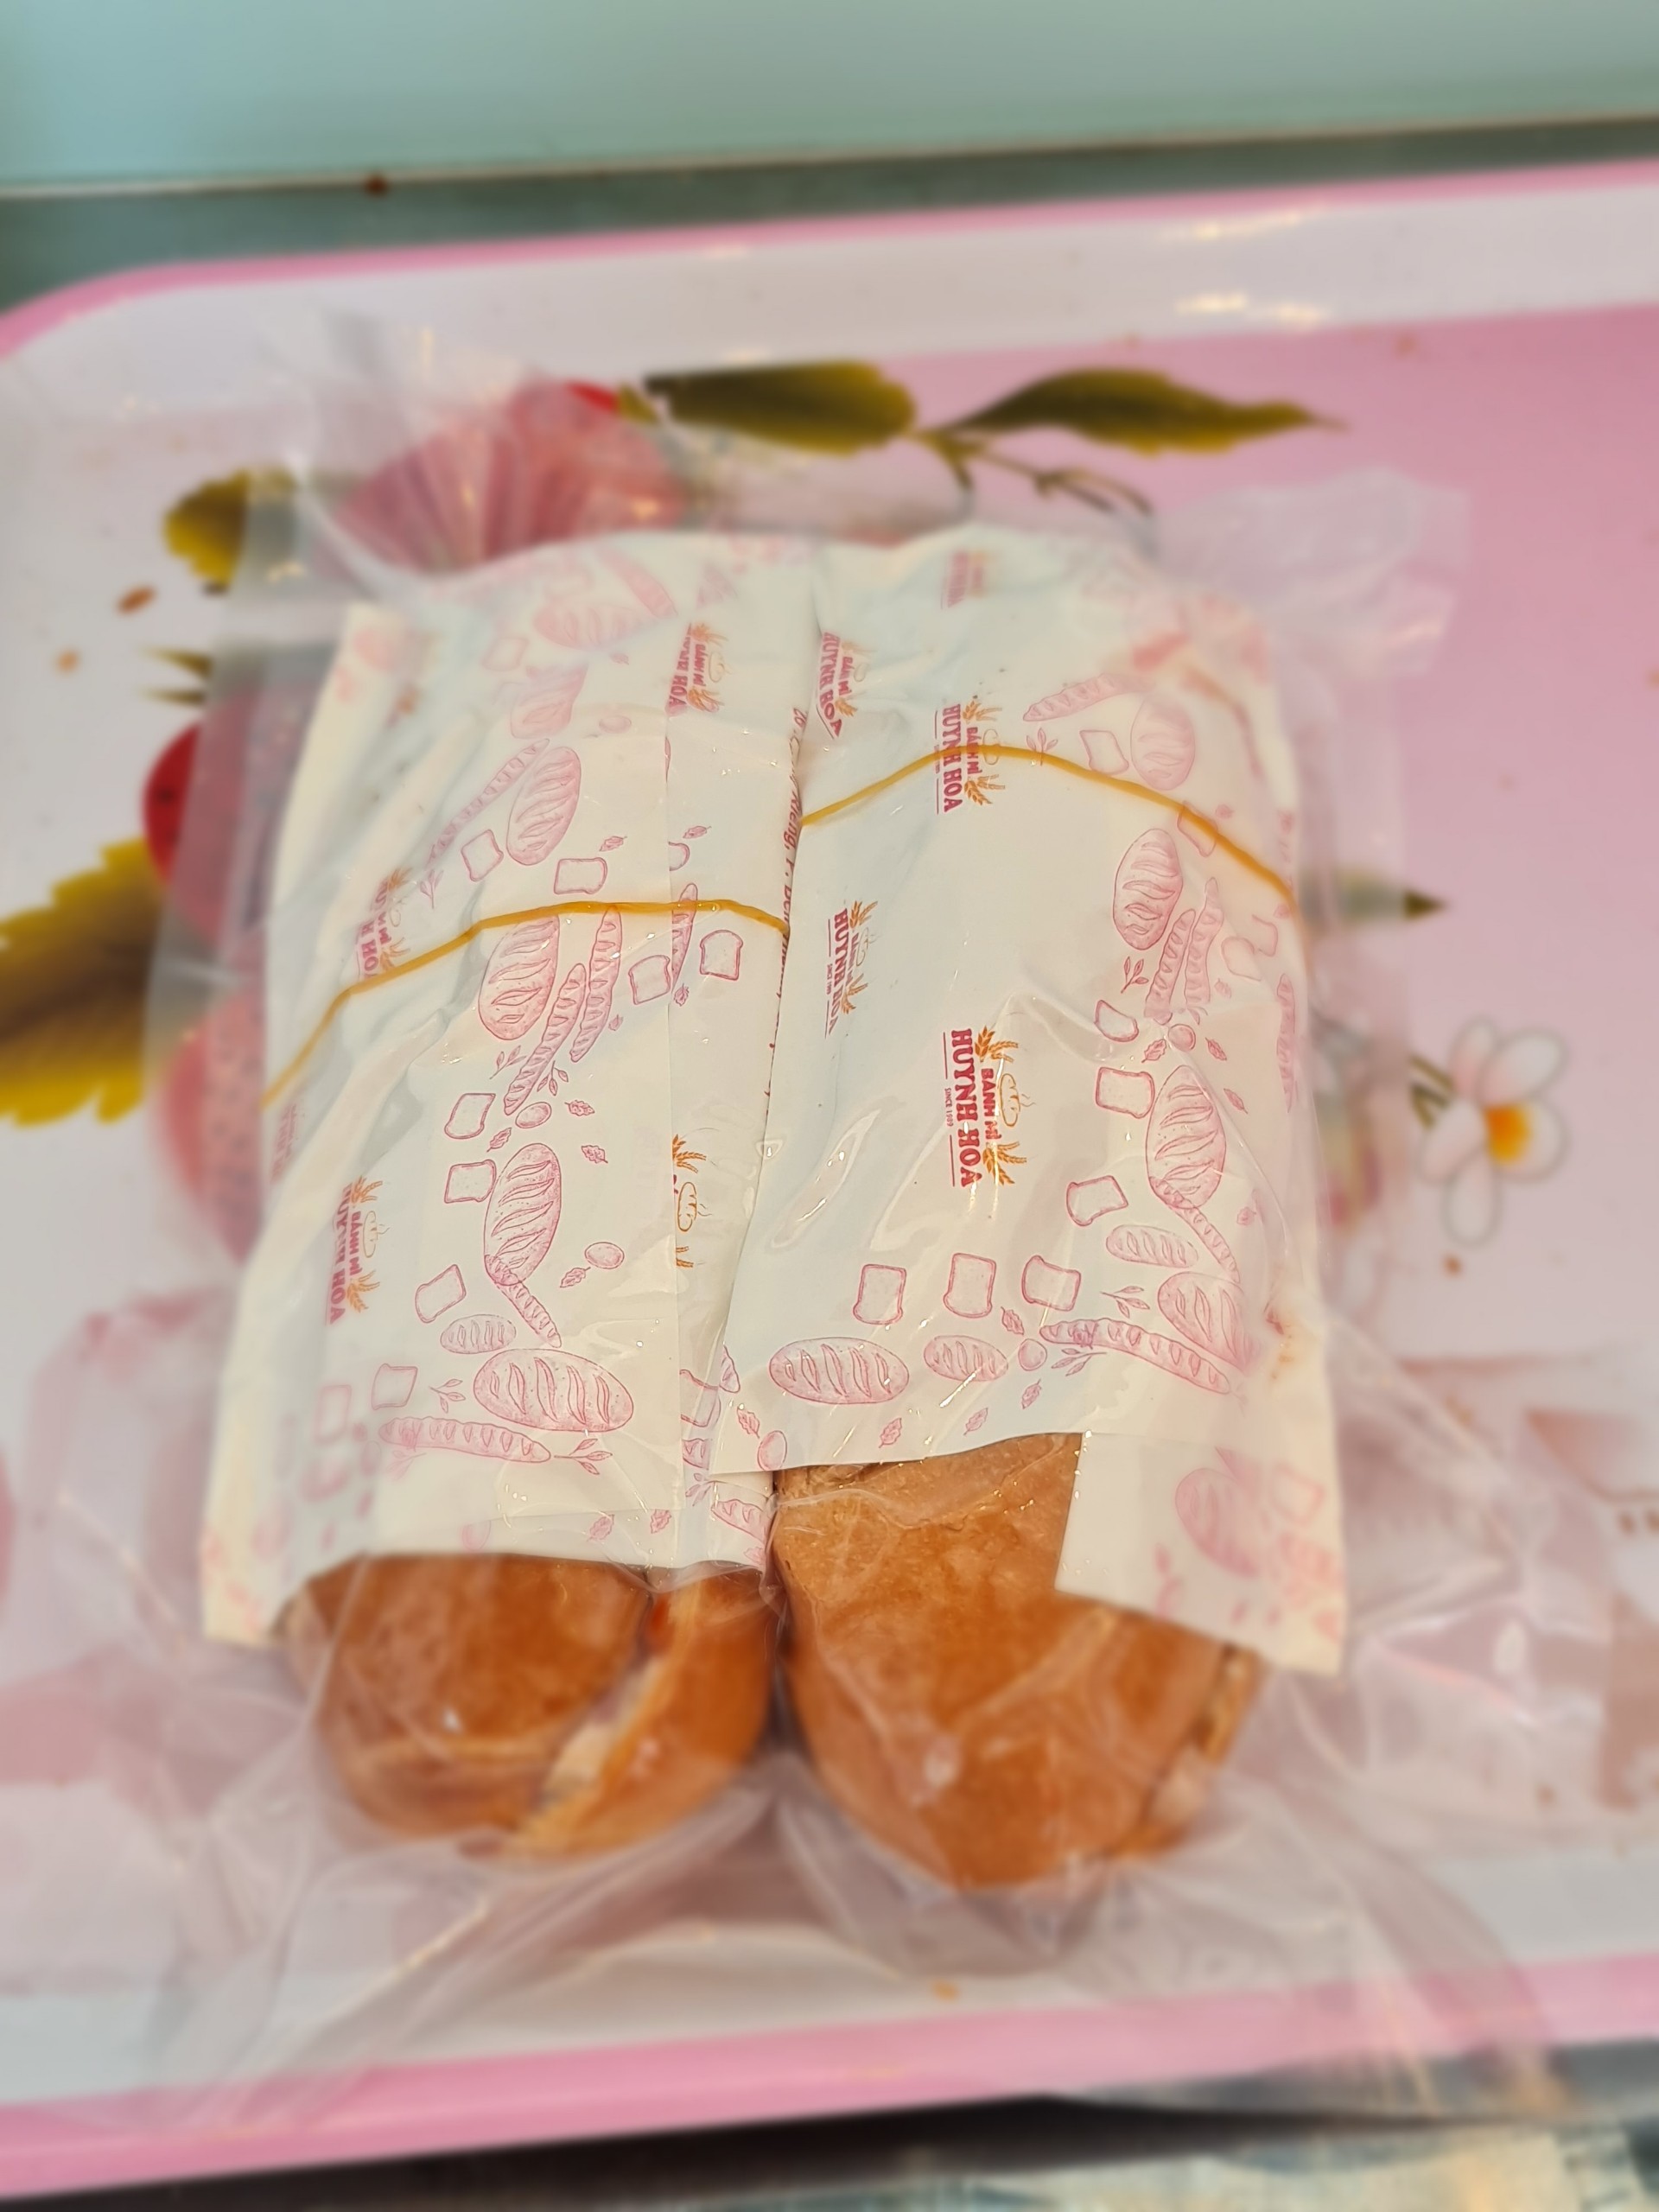 Bánh mì nổi tiếng Sài Gòn ship máy bay ra Hà Nội, giá 100 ngàn/ ổ thực khách vẫn 'mê'